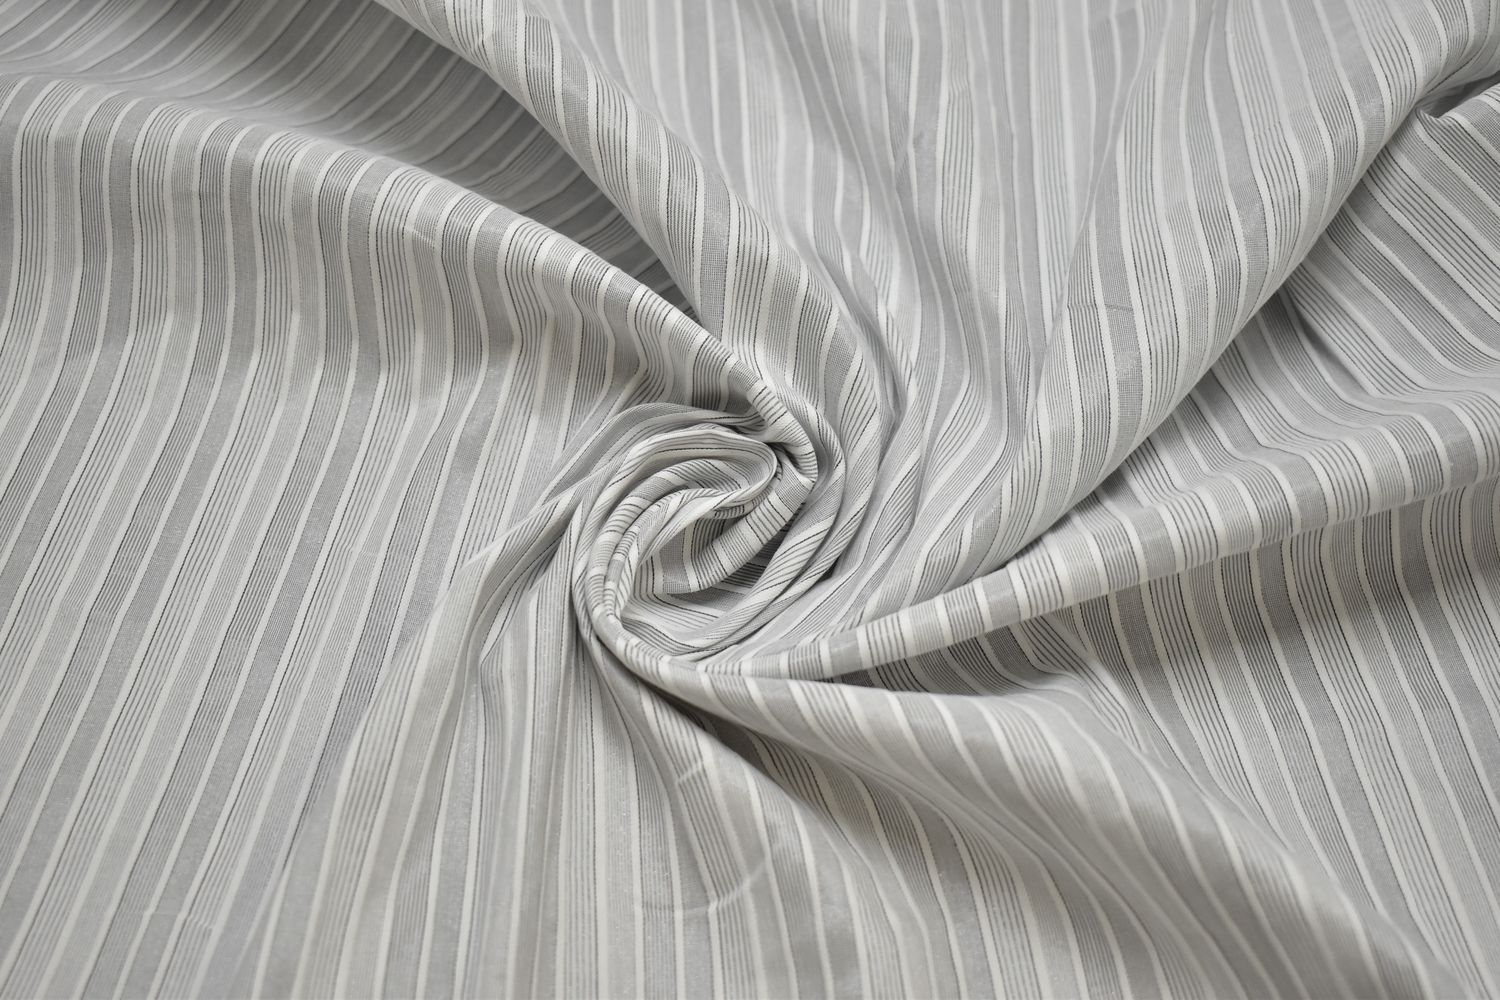 Рубашечная серая ткань полоска W-133014